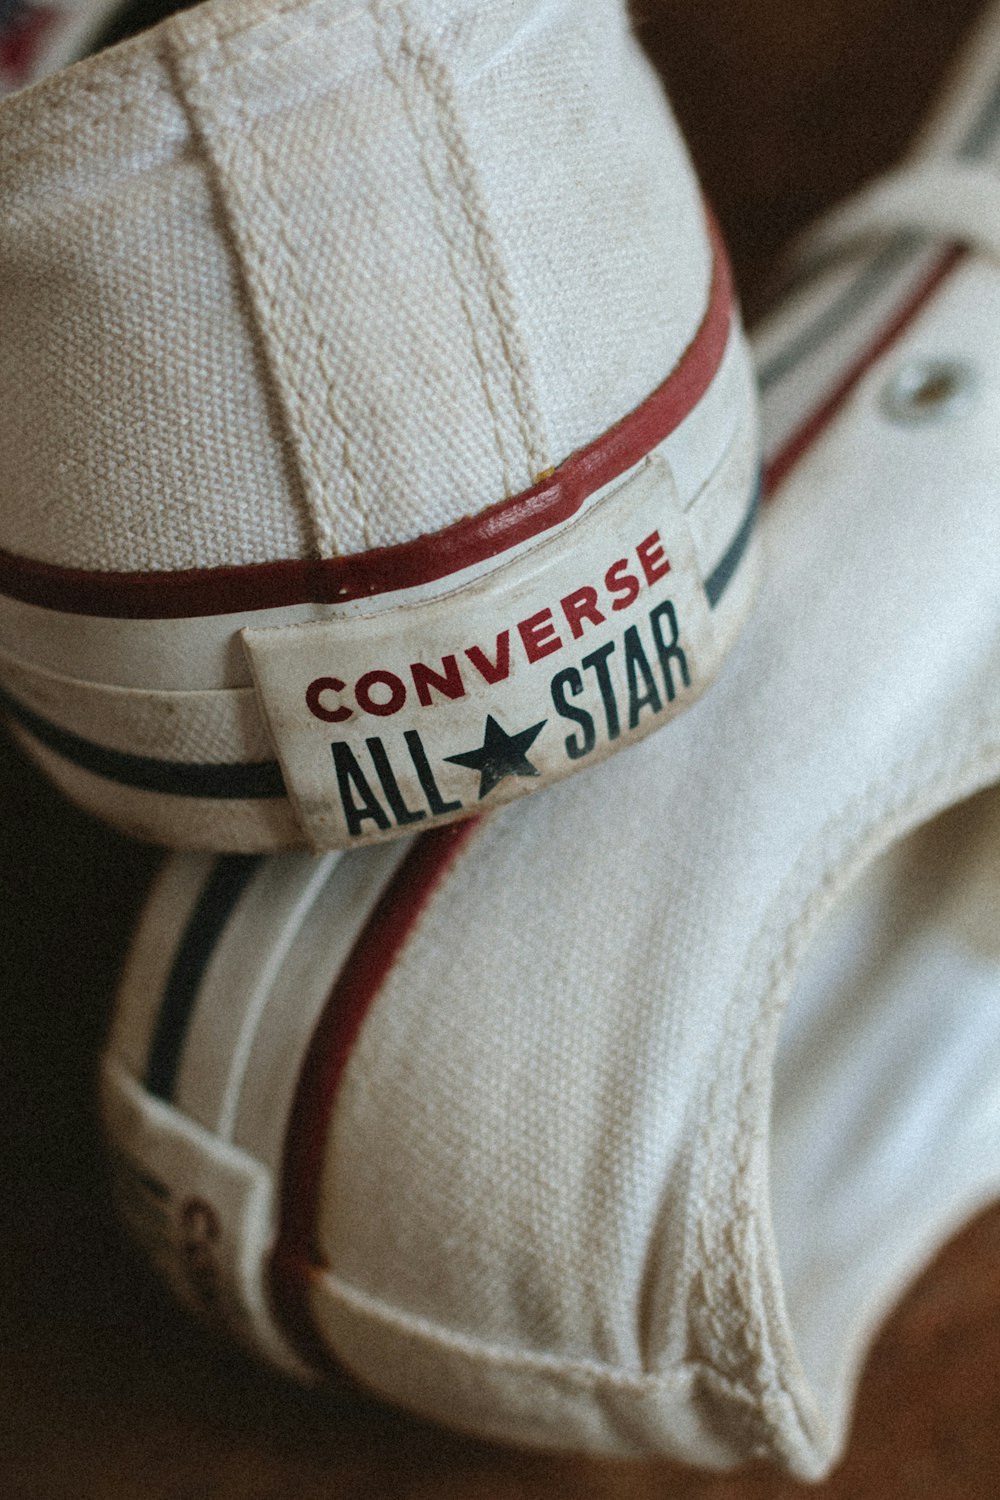 Un par de zapatos Converse All Star uno encima del otro